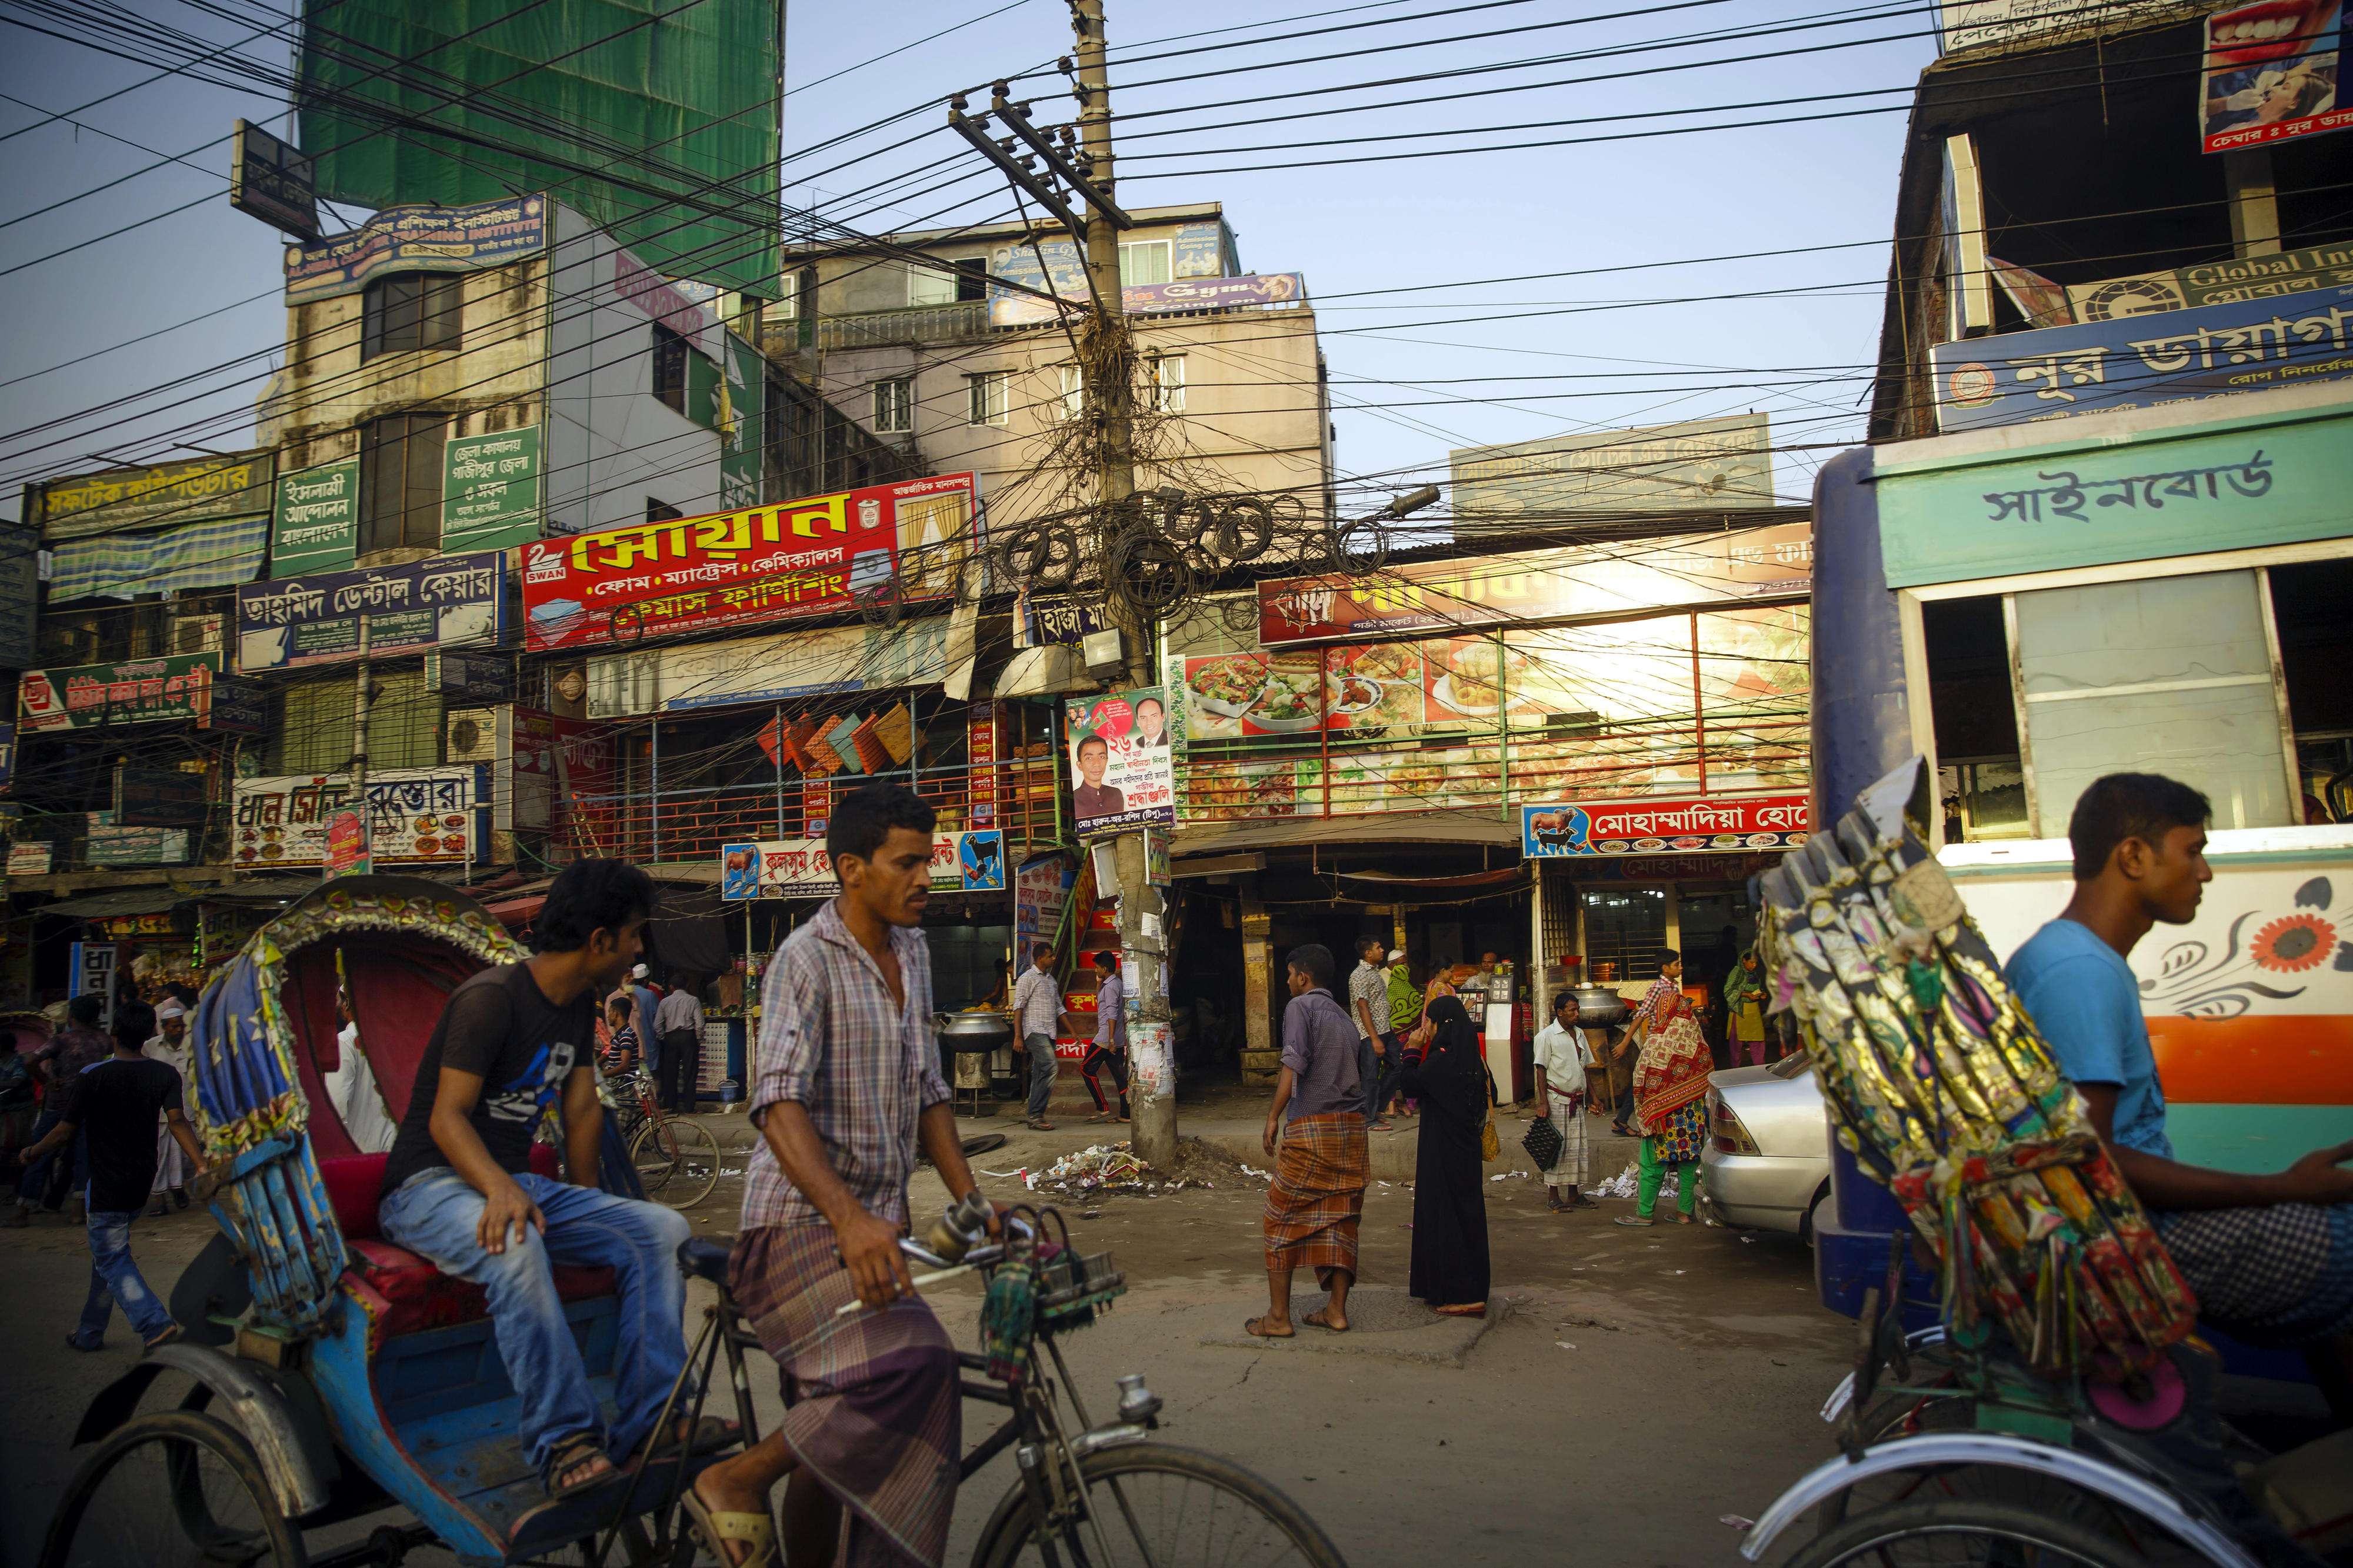 Street scene in Dhaka, the capital of Bangladesh